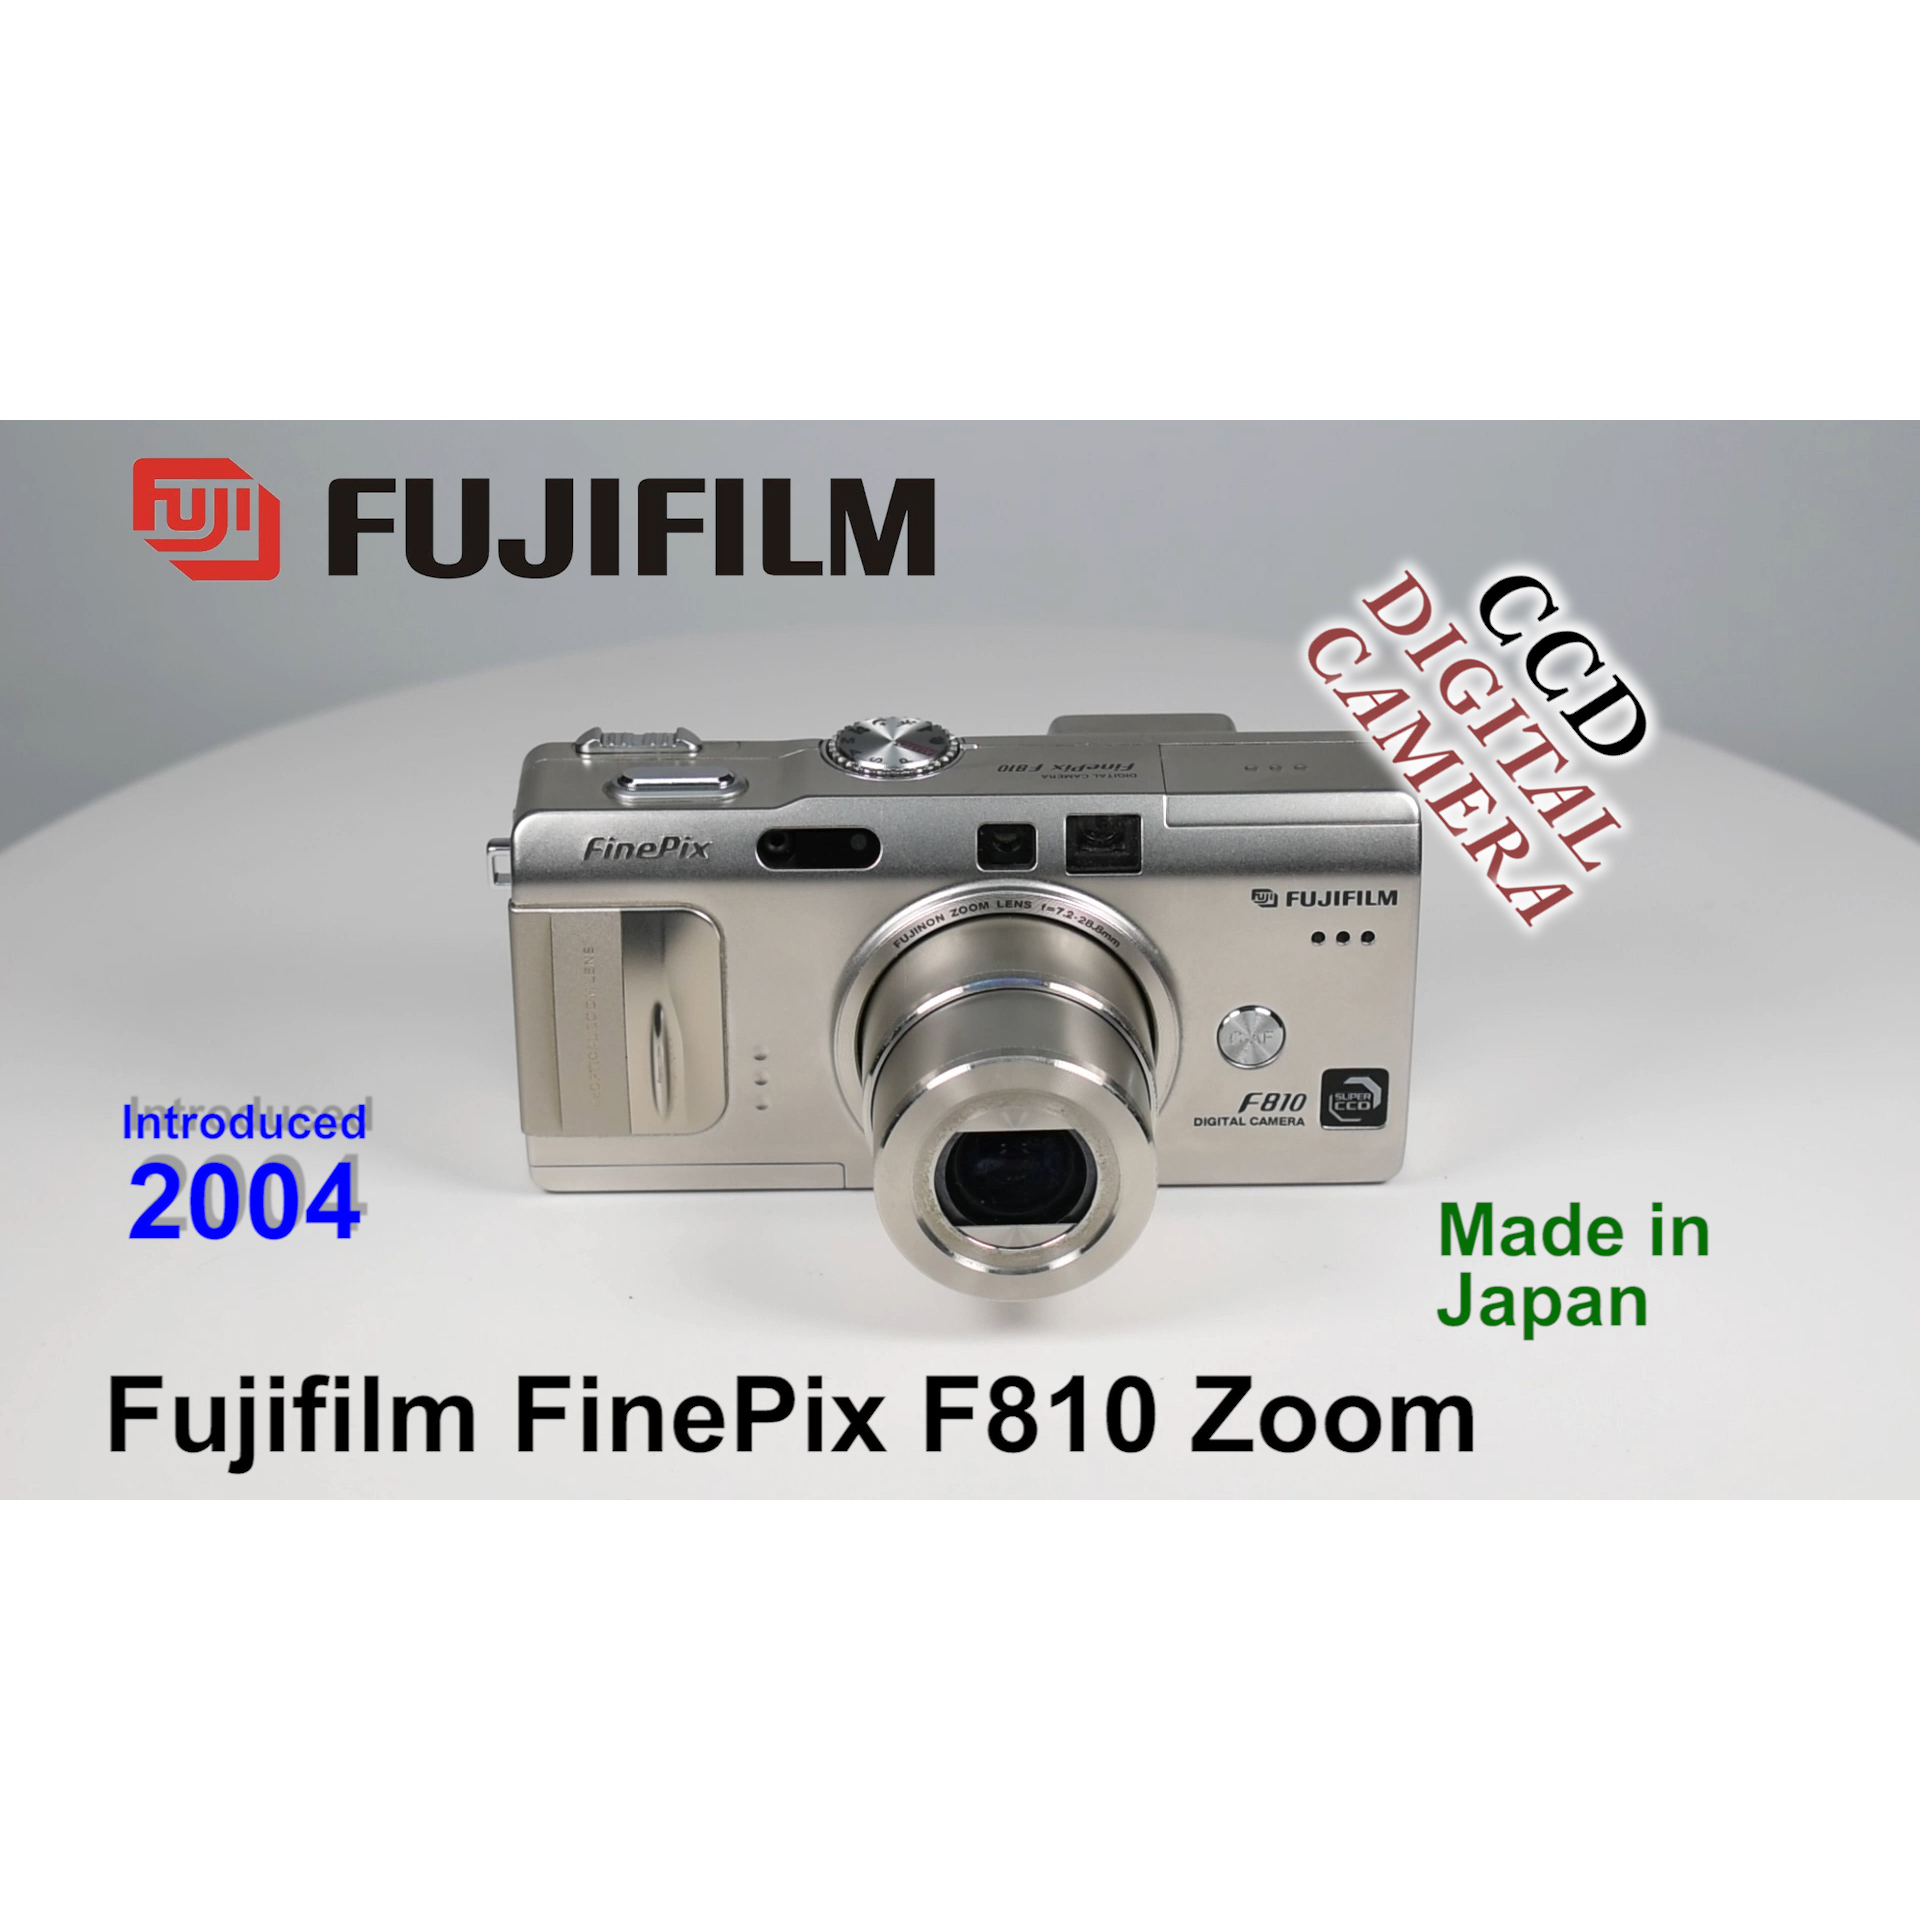 2004 Fujifilm FinePix F810 Zoom – CCD Digital Camera